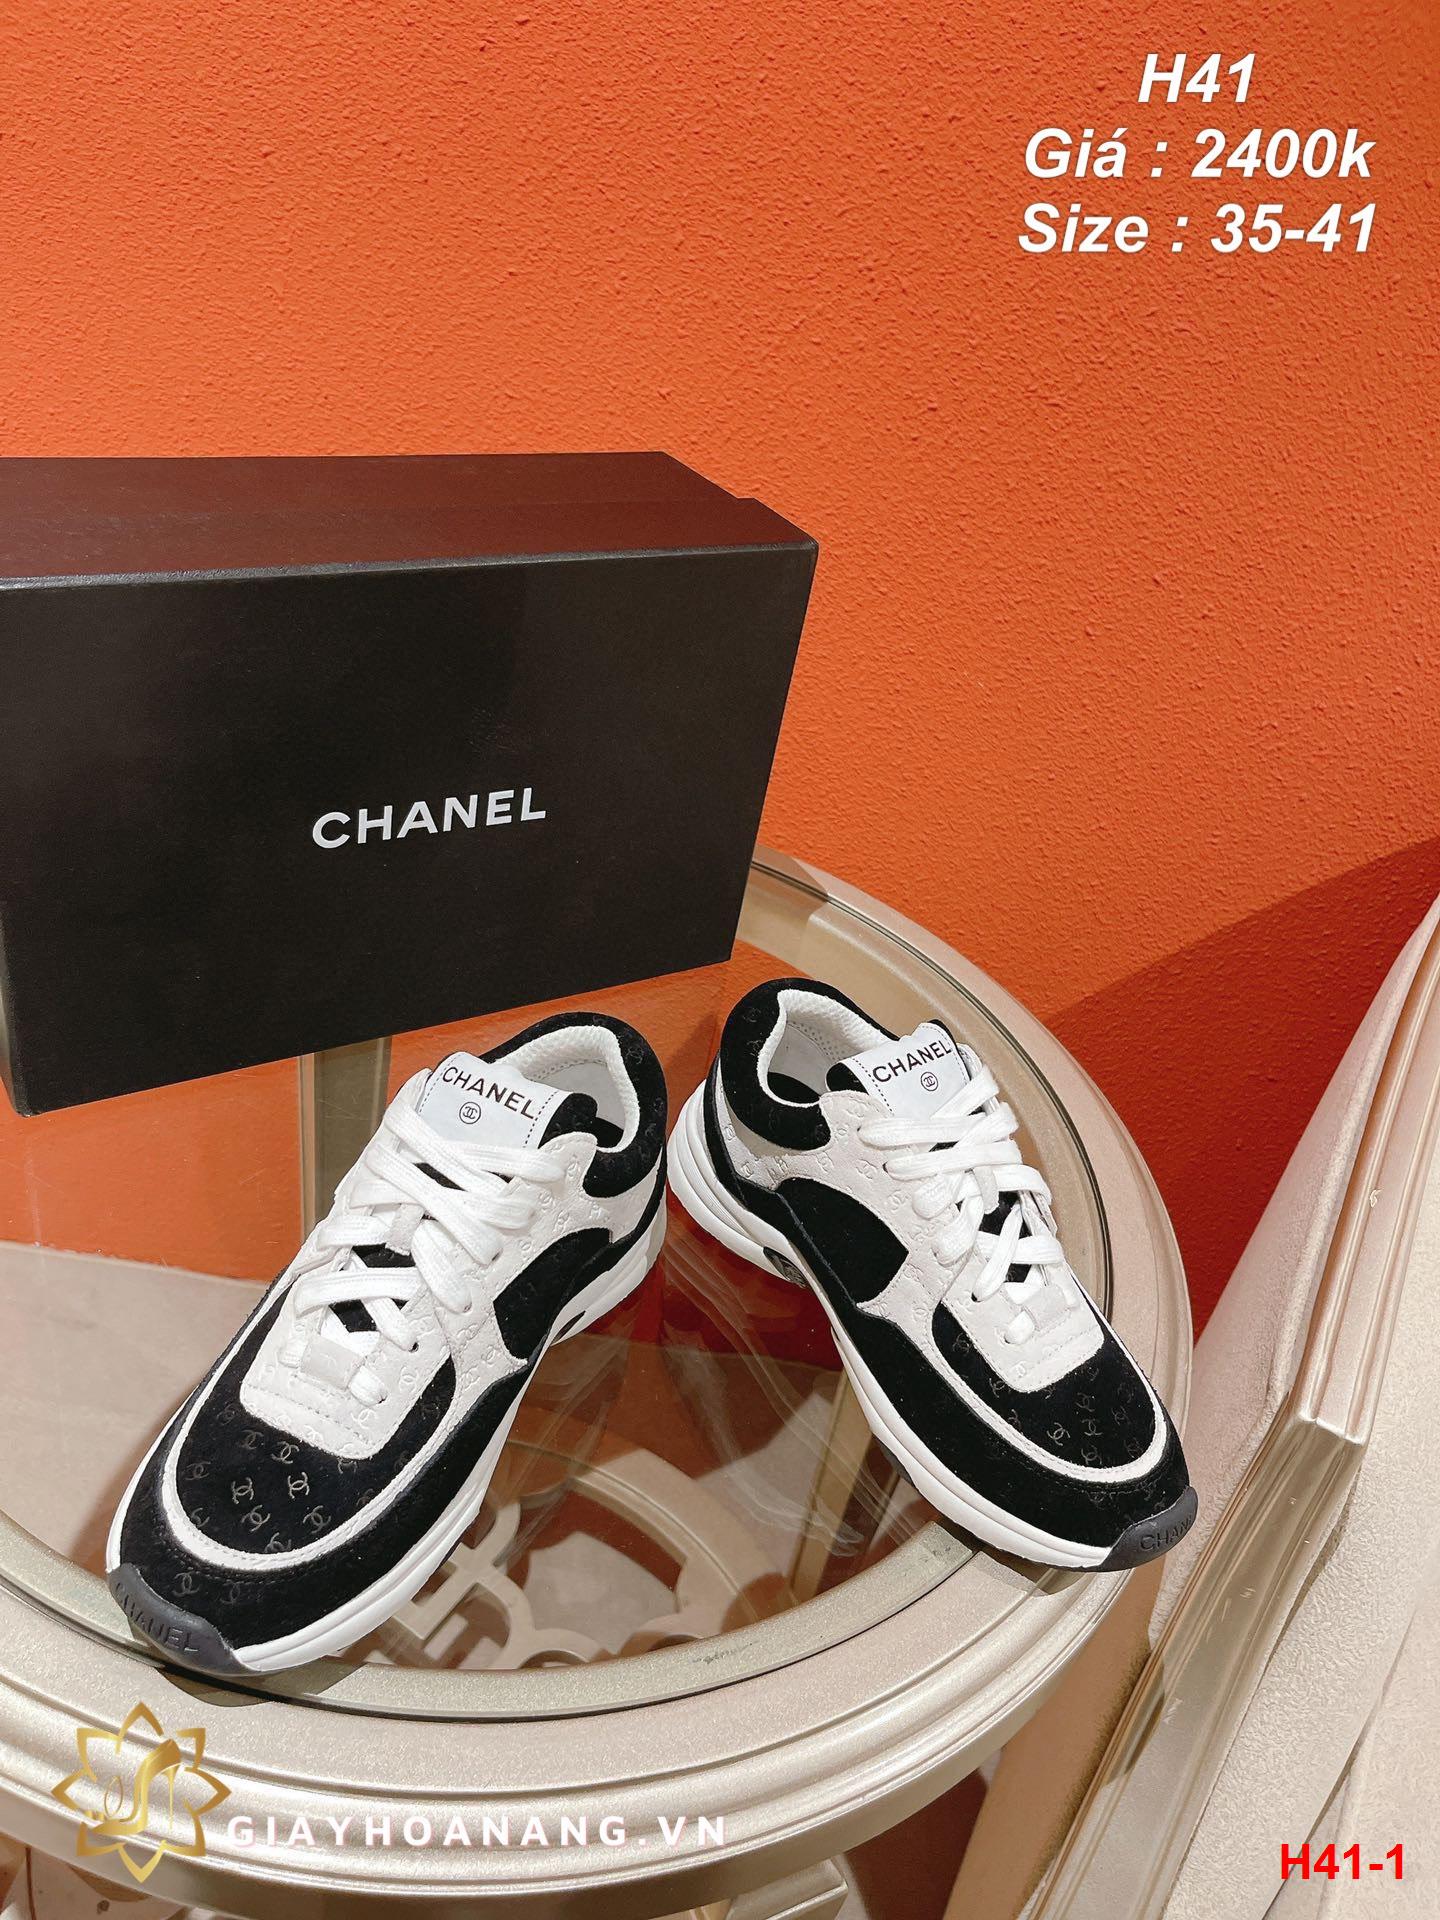 H41-1 Chanel giày thể thao siêu cấp